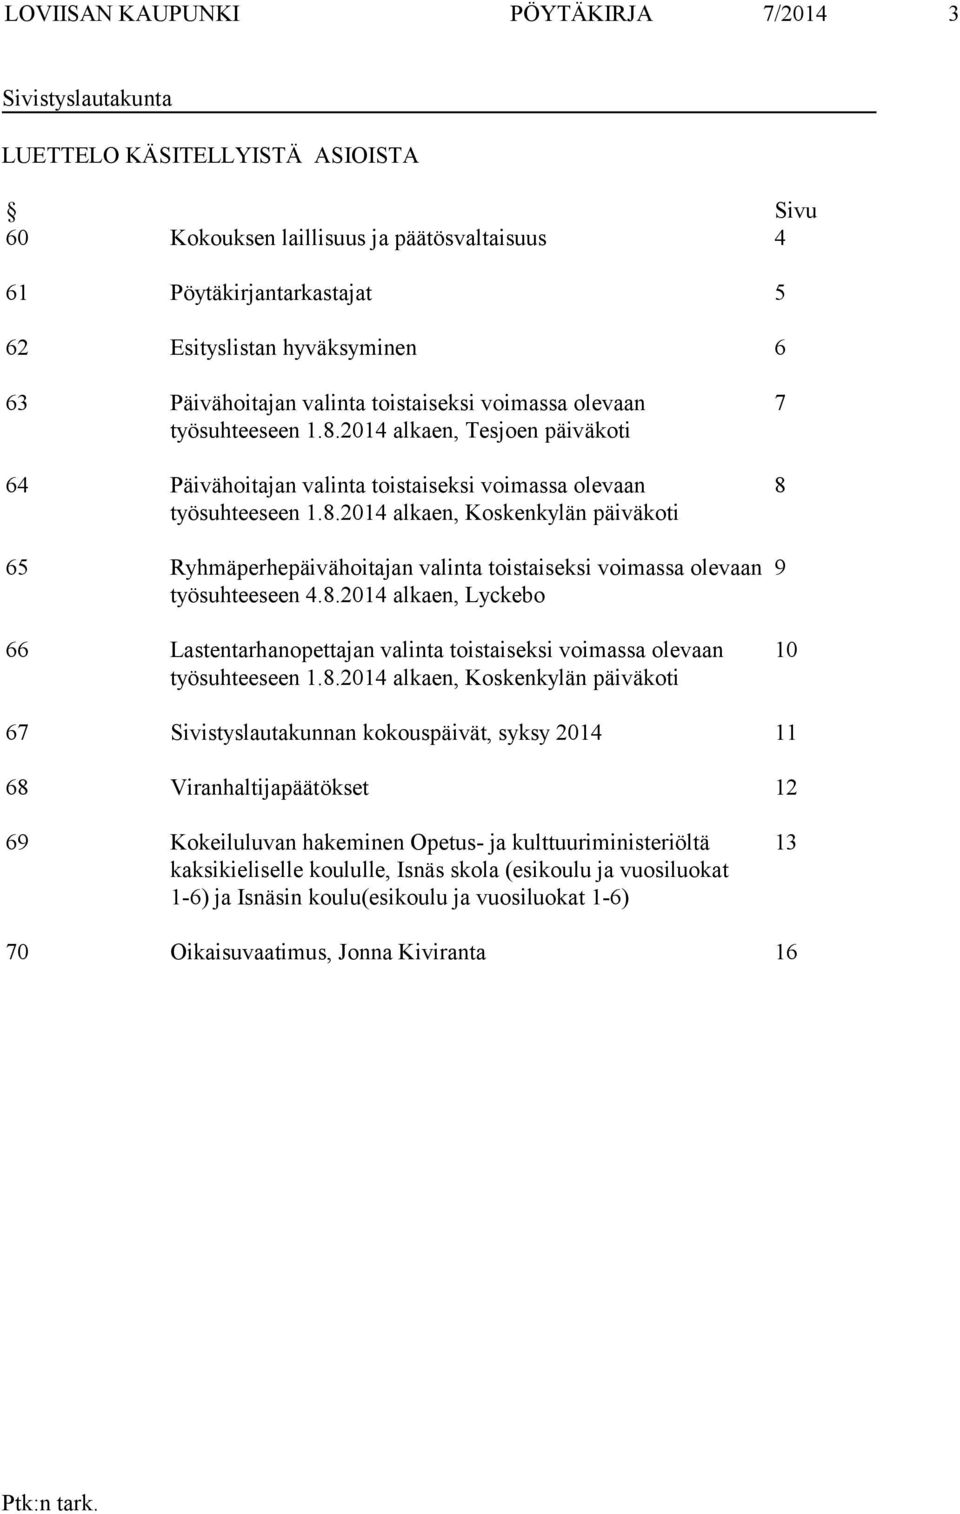 8.2014 alkaen, Lyckebo 66 Lastentarhanopettajan valinta toistaiseksi voimassa olevaan työsuhteeseen 1.8.2014 alkaen, Koskenkylän päiväkoti 7 8 9 10 67 Sivistyslautakunnan kokouspäivät, syksy 2014 11